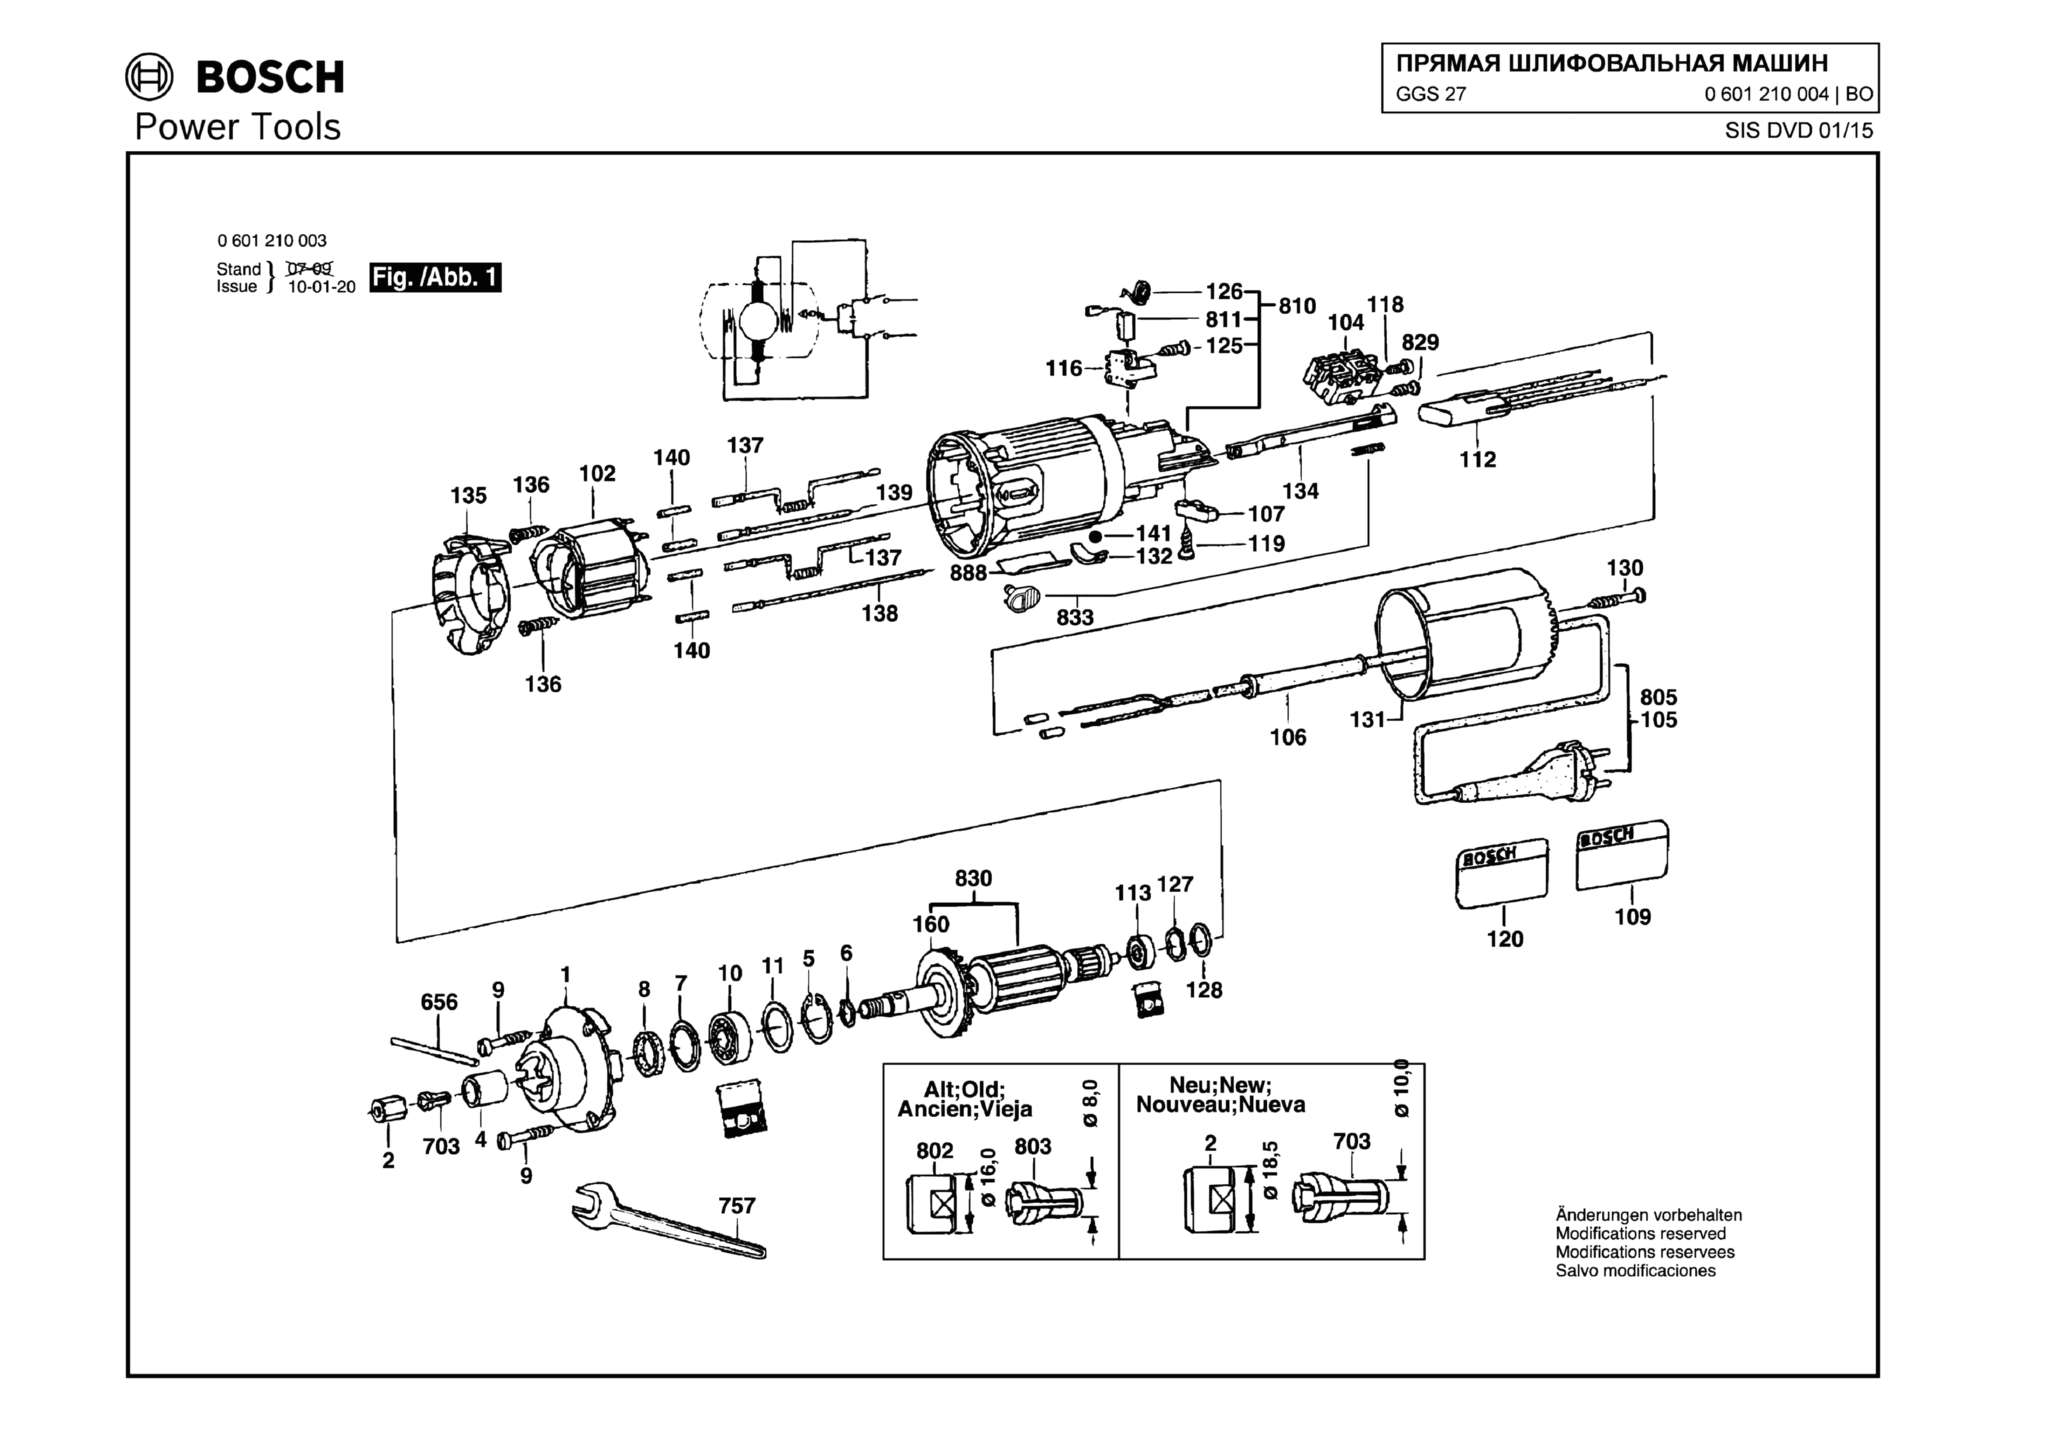 Запчасти, схема и деталировка Bosch GGS 27 (ТИП 0601210004)